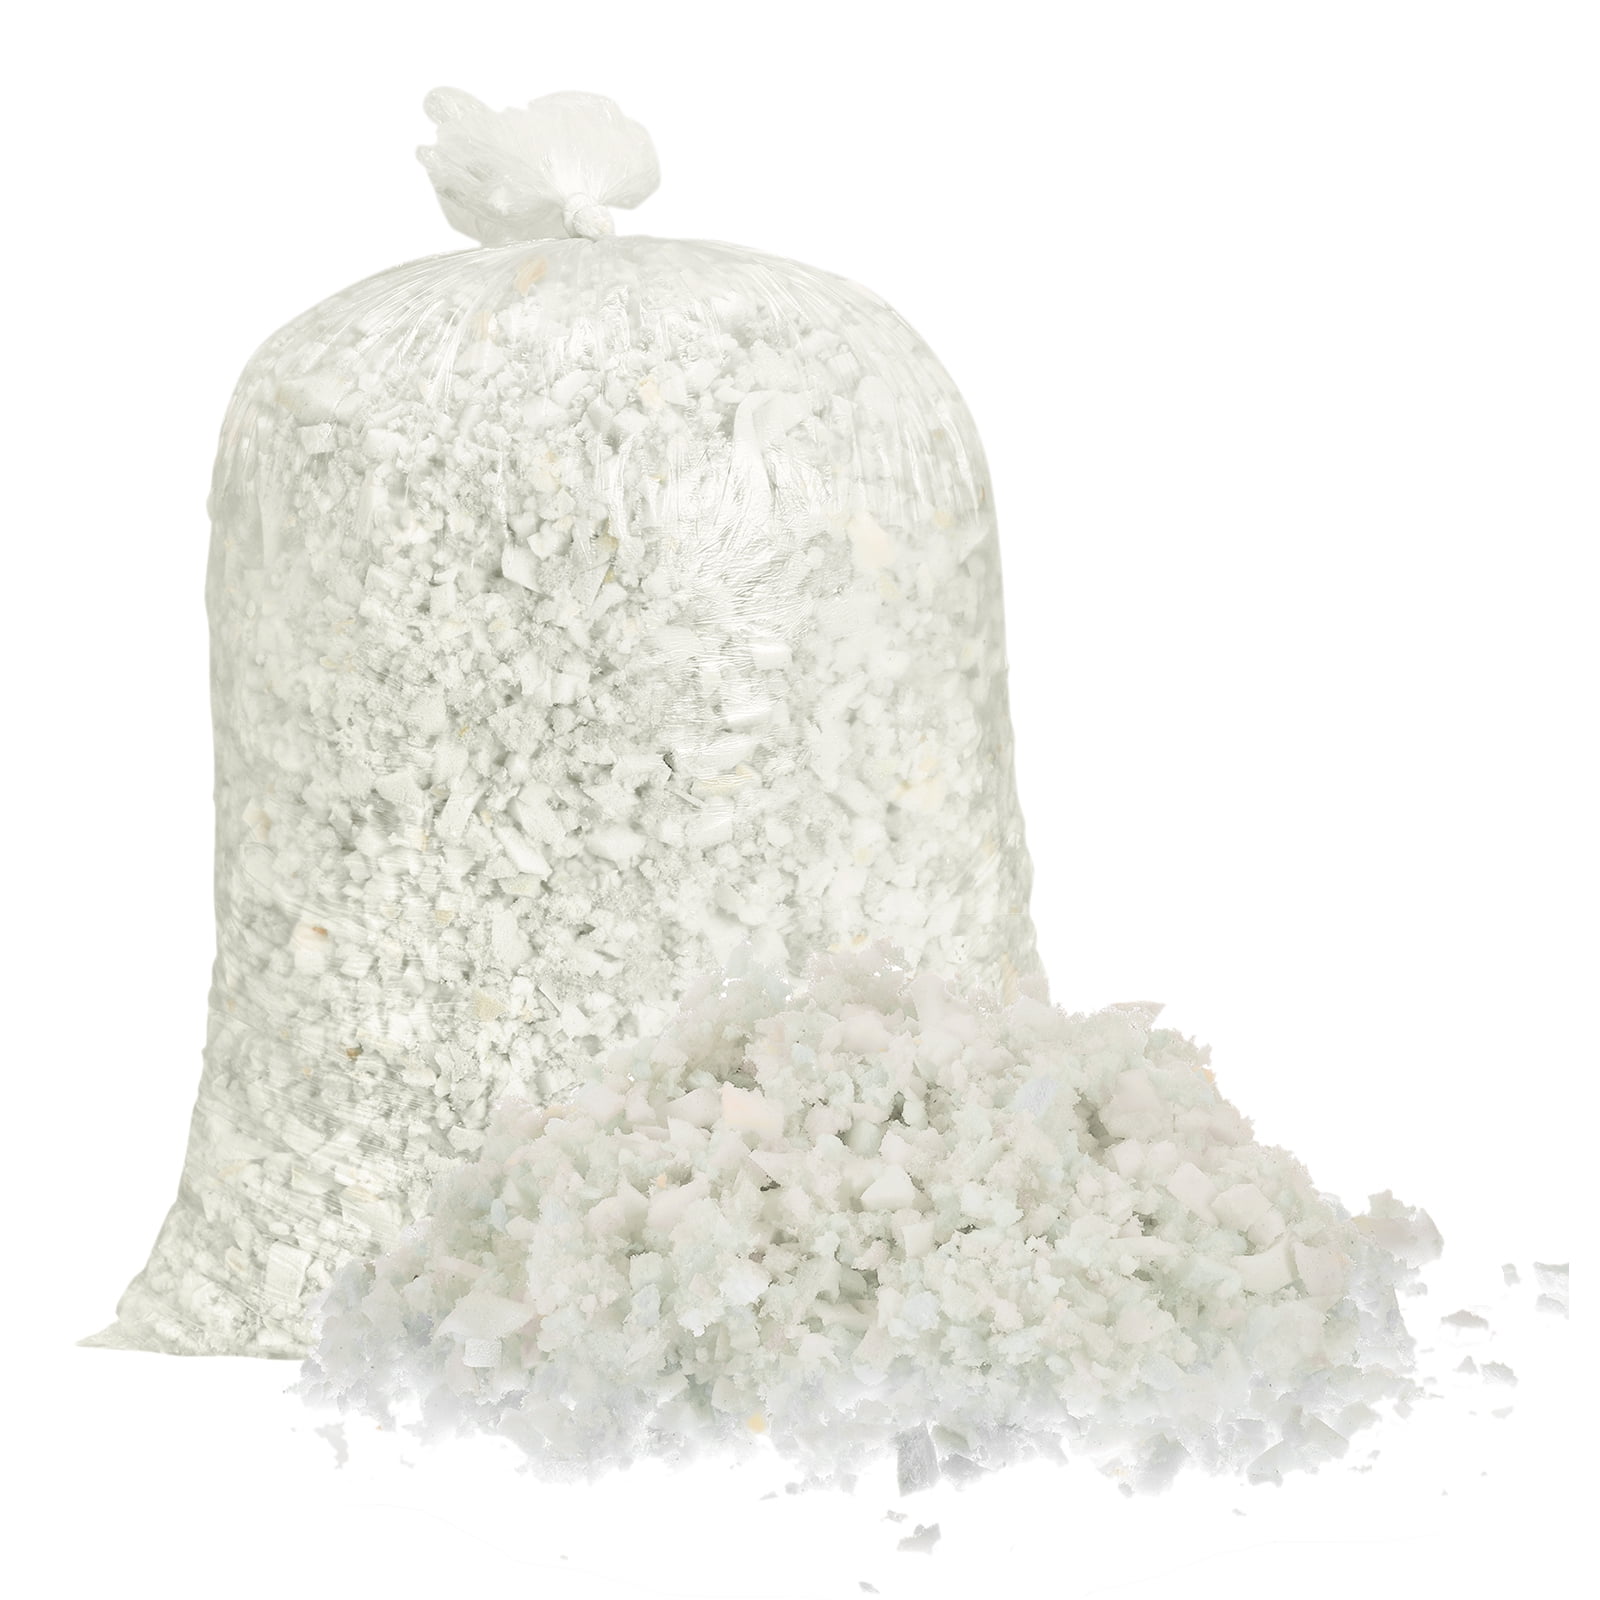 ALLC 5 LBS Shredded Memory Foam Bean Bag Filler, Comoros